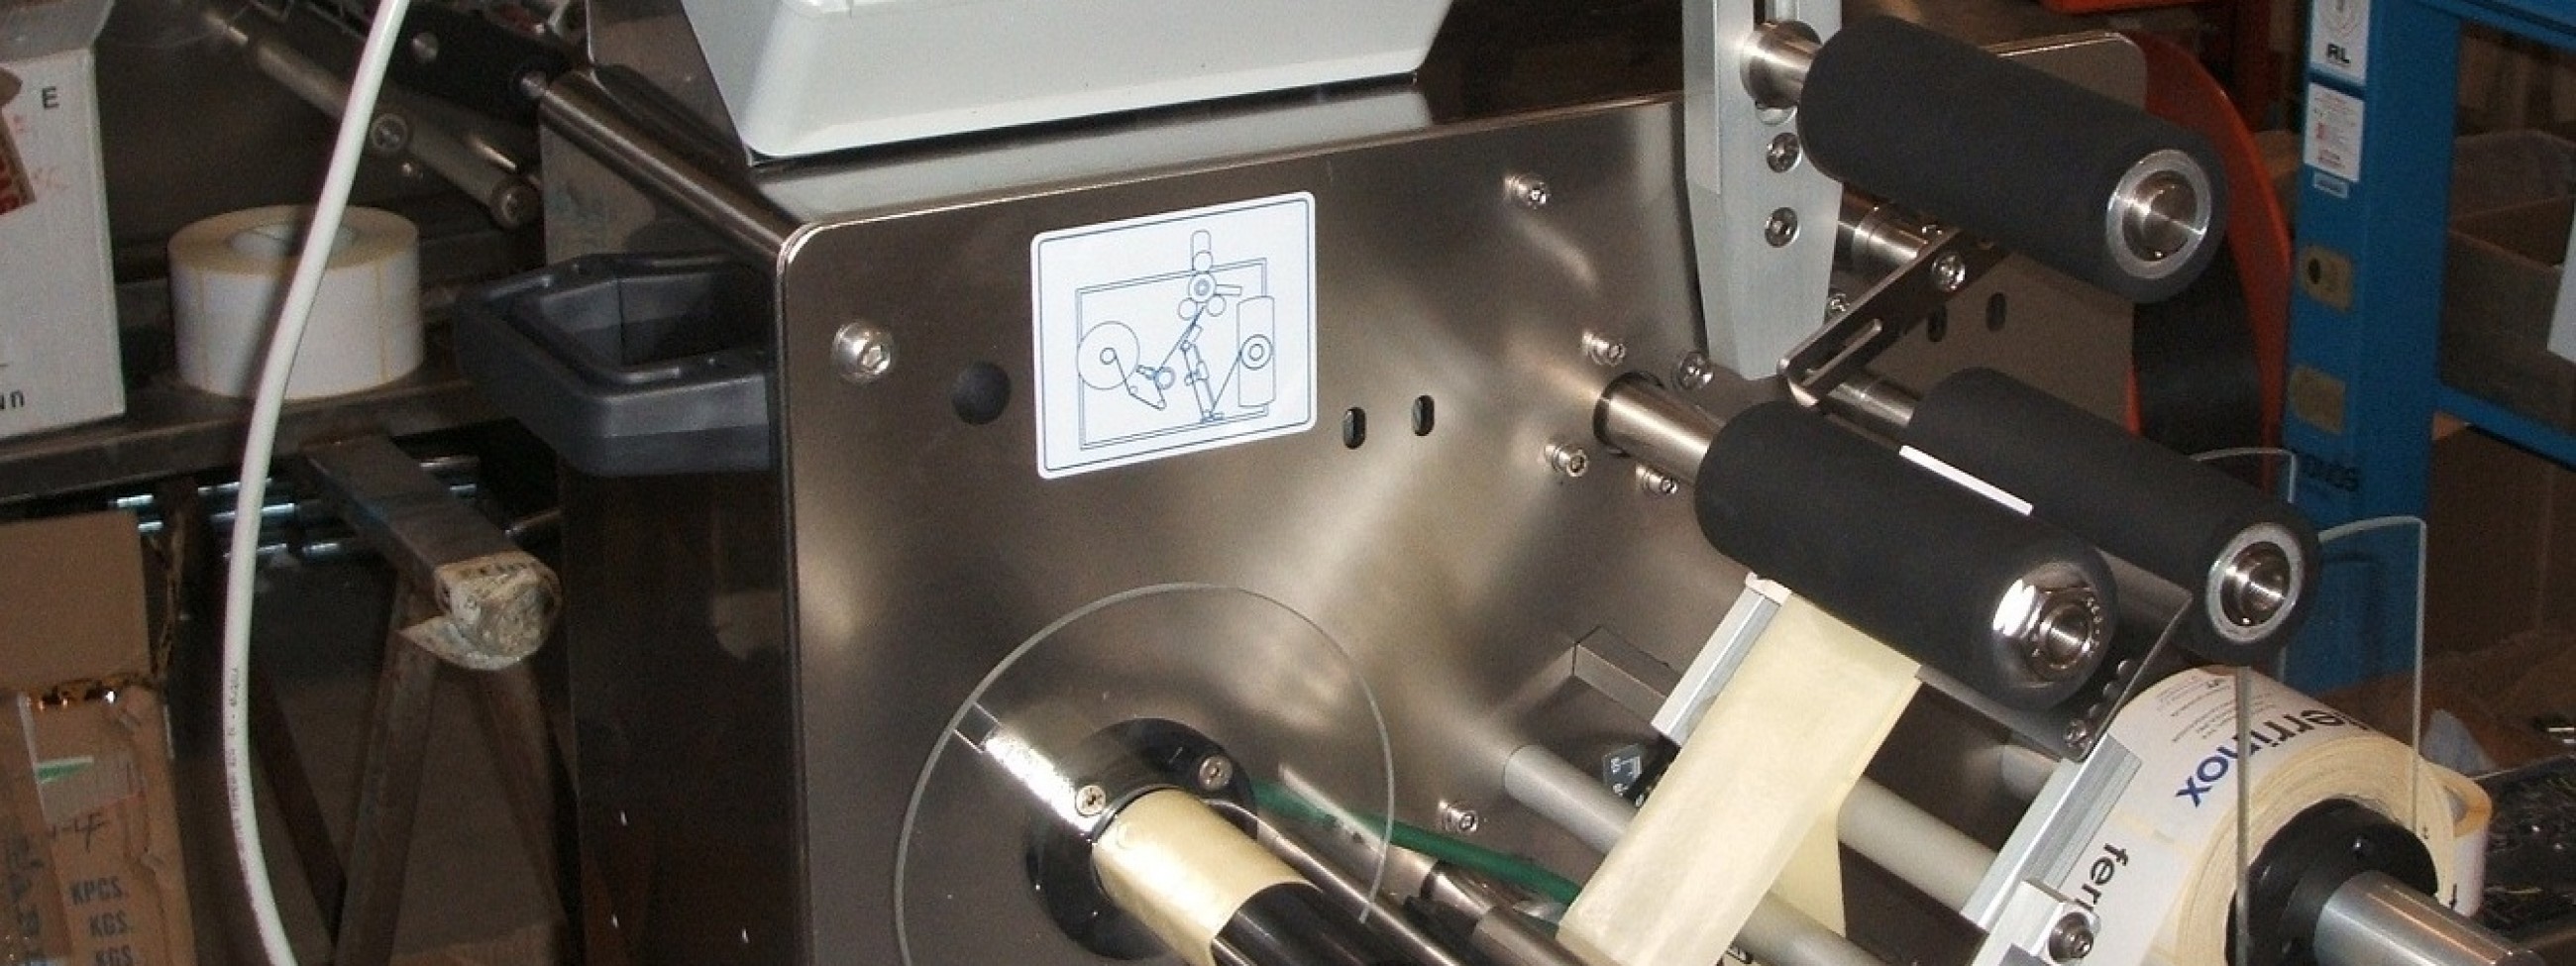 Etichettatrice semiautomatica FX-10.JPG